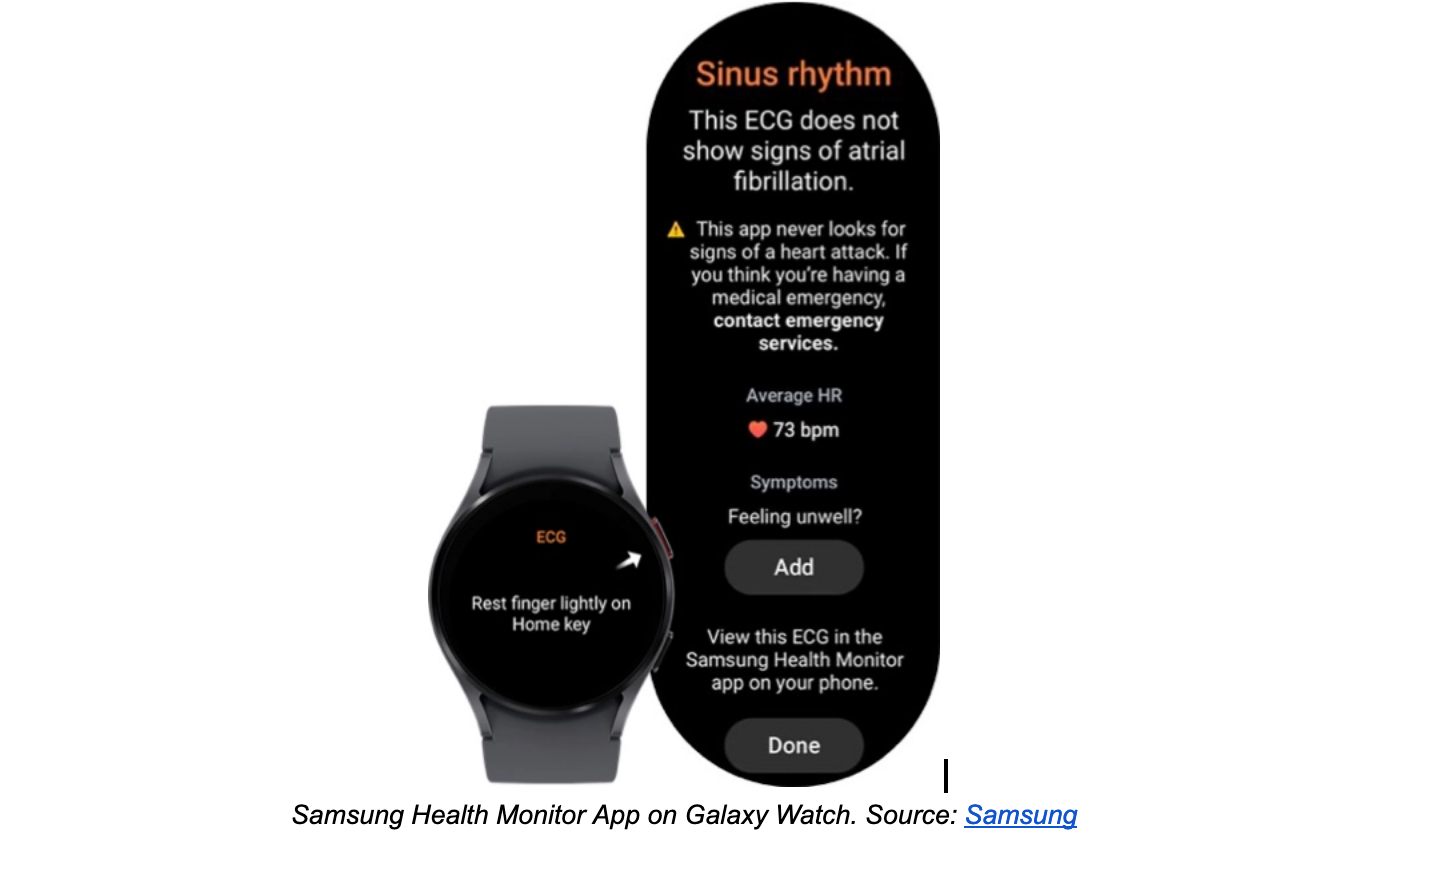 Samsung Health Monitor App on Galaxy Watch. 